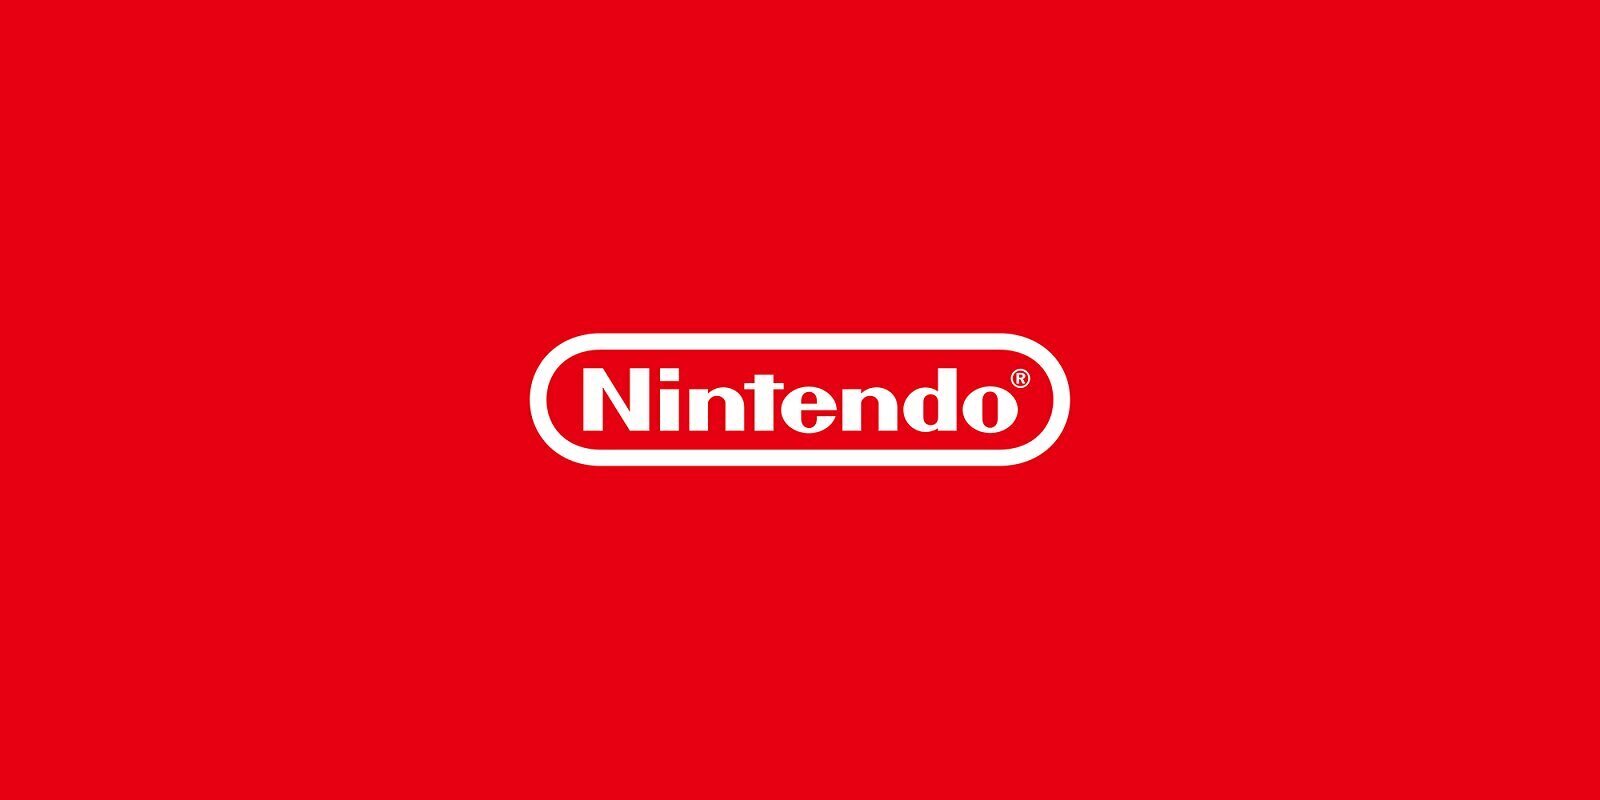 Nintendo afirma que no entrará en la guerra de adquisiciones y confirma su interés por los NFT